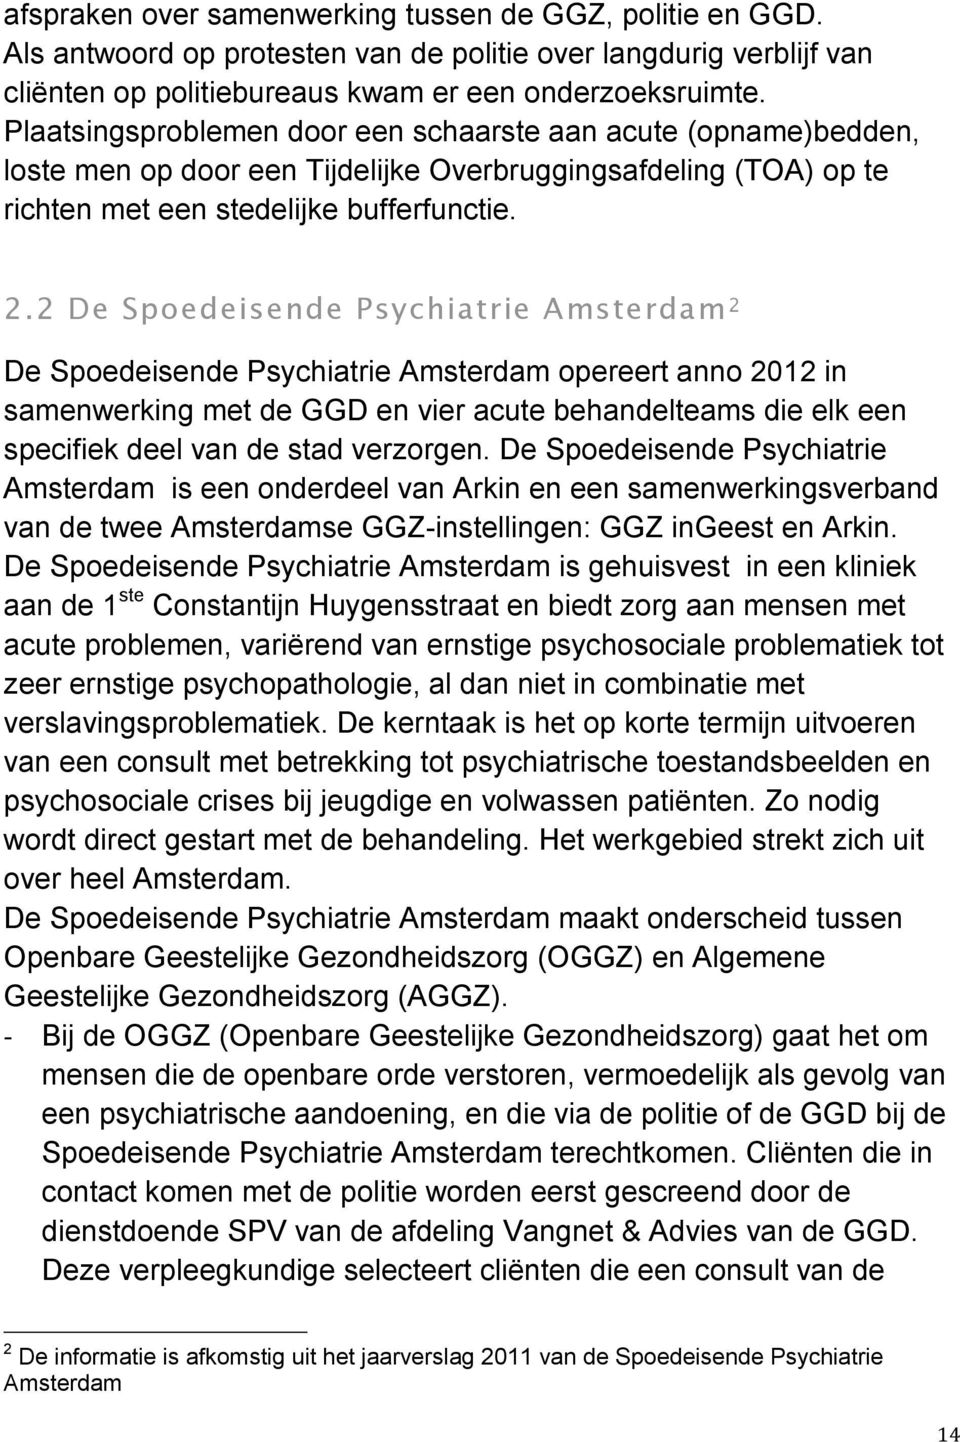 2 De Spoedeisende Psychiatrie Amsterdam 2 De Spoedeisende Psychiatrie Amsterdam opereert anno 2012 in samenwerking met de GGD en vier acute behandelteams die elk een specifiek deel van de stad